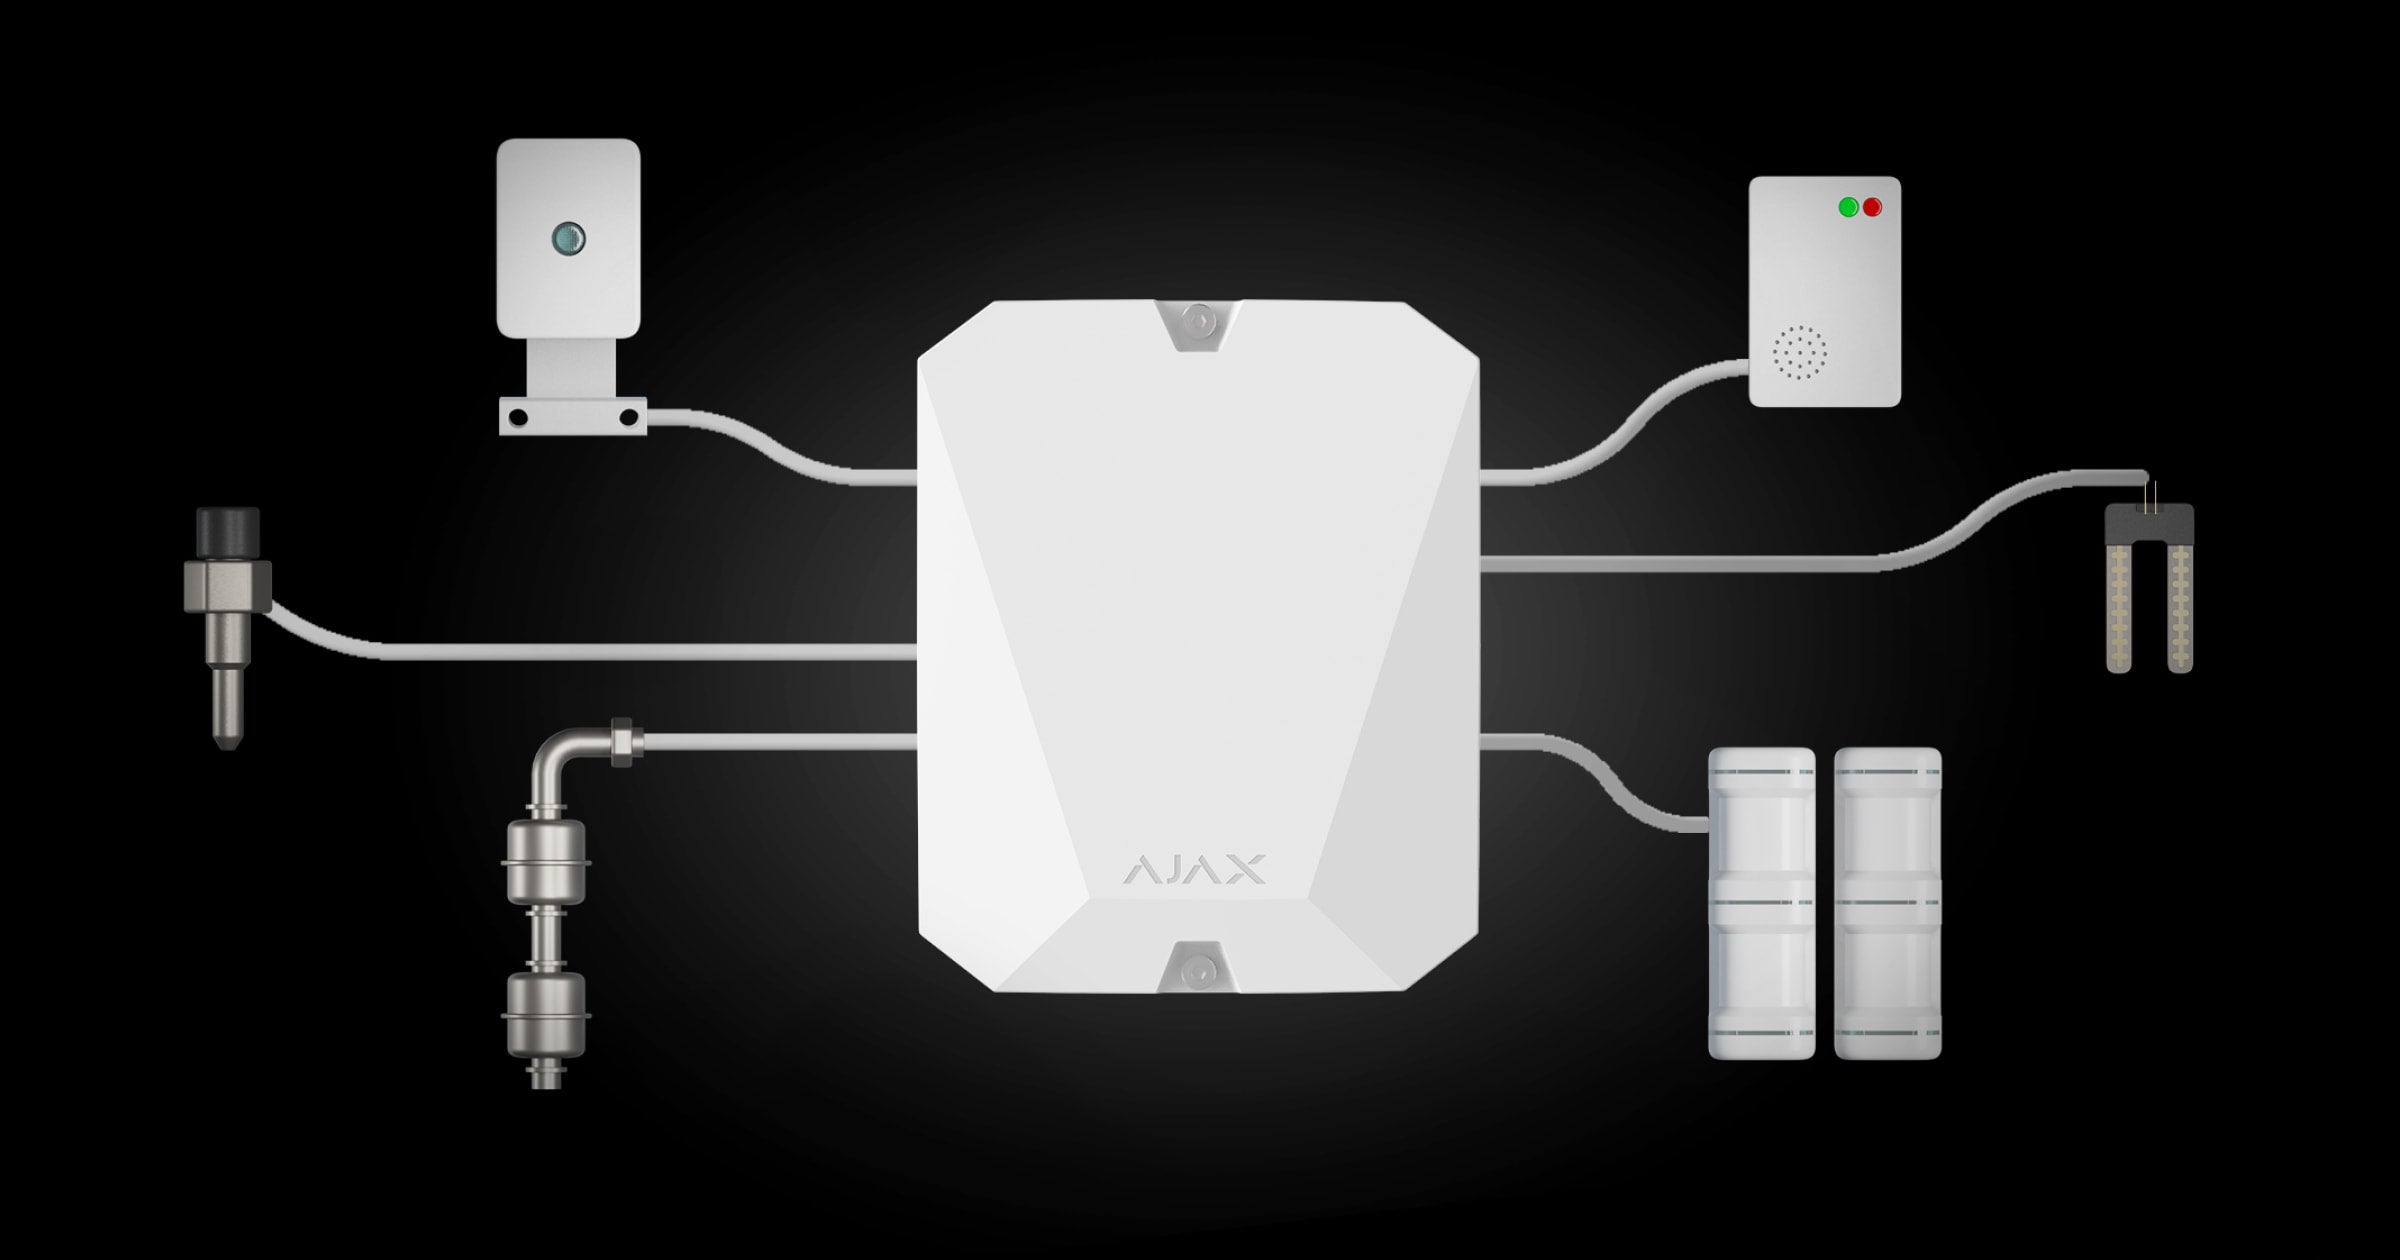 باللون الاسود من اجاكس Multi Transmitter وحدة لتوصيل الإنذار السلكي وإدارة الأمان عبر التطبيق